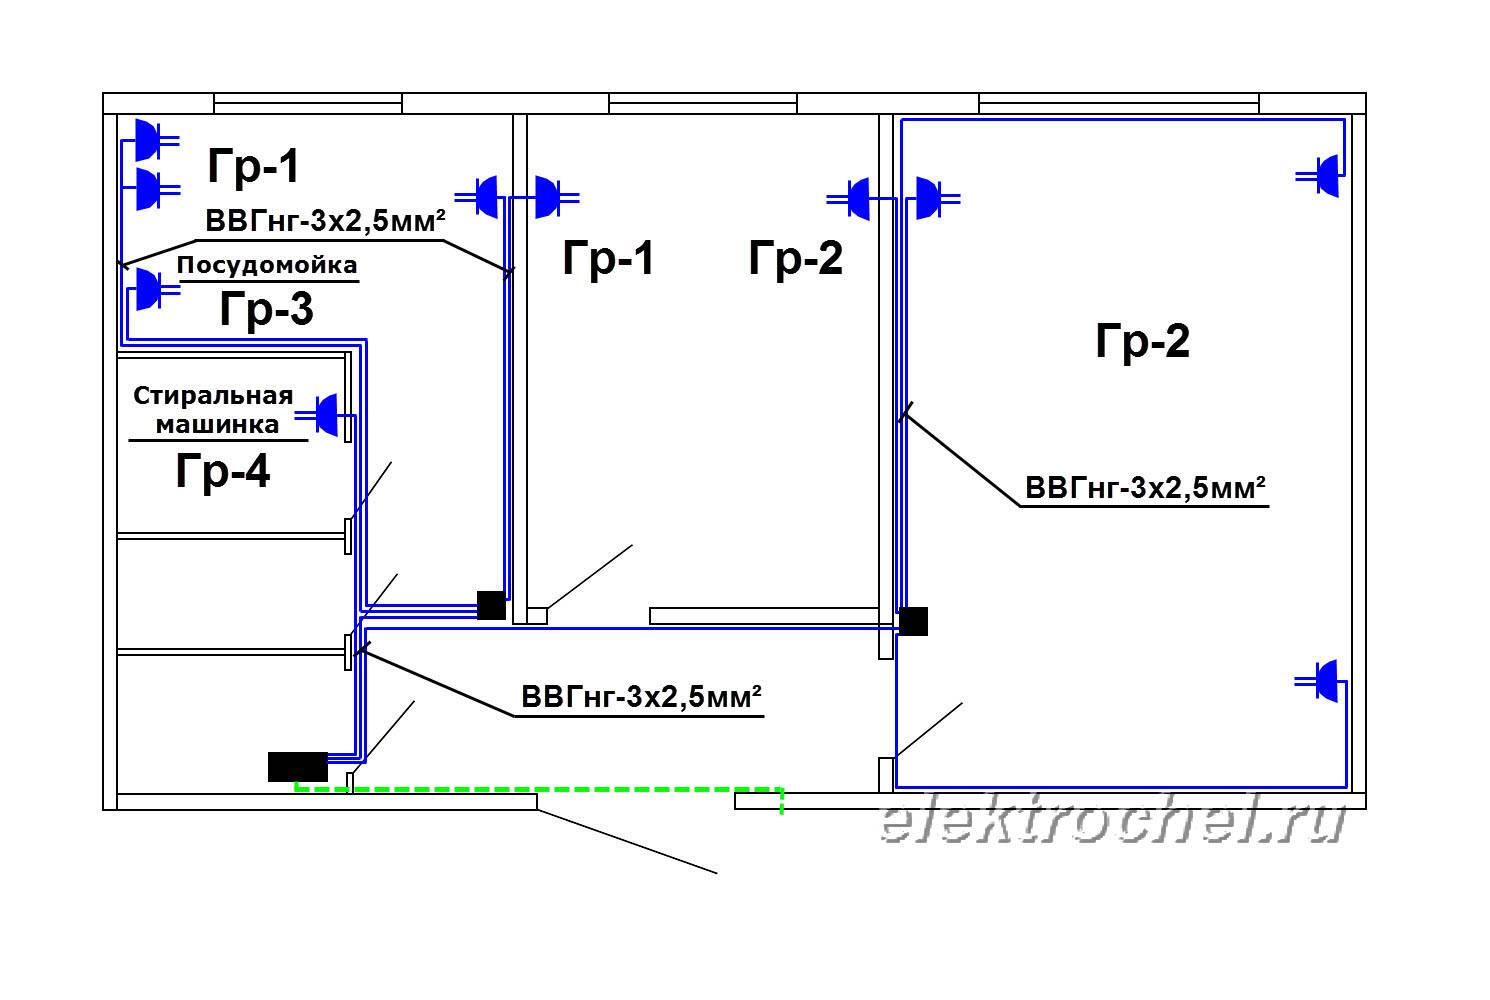 Замена электропроводки в панельном доме: тонкости, правила и рекомендации